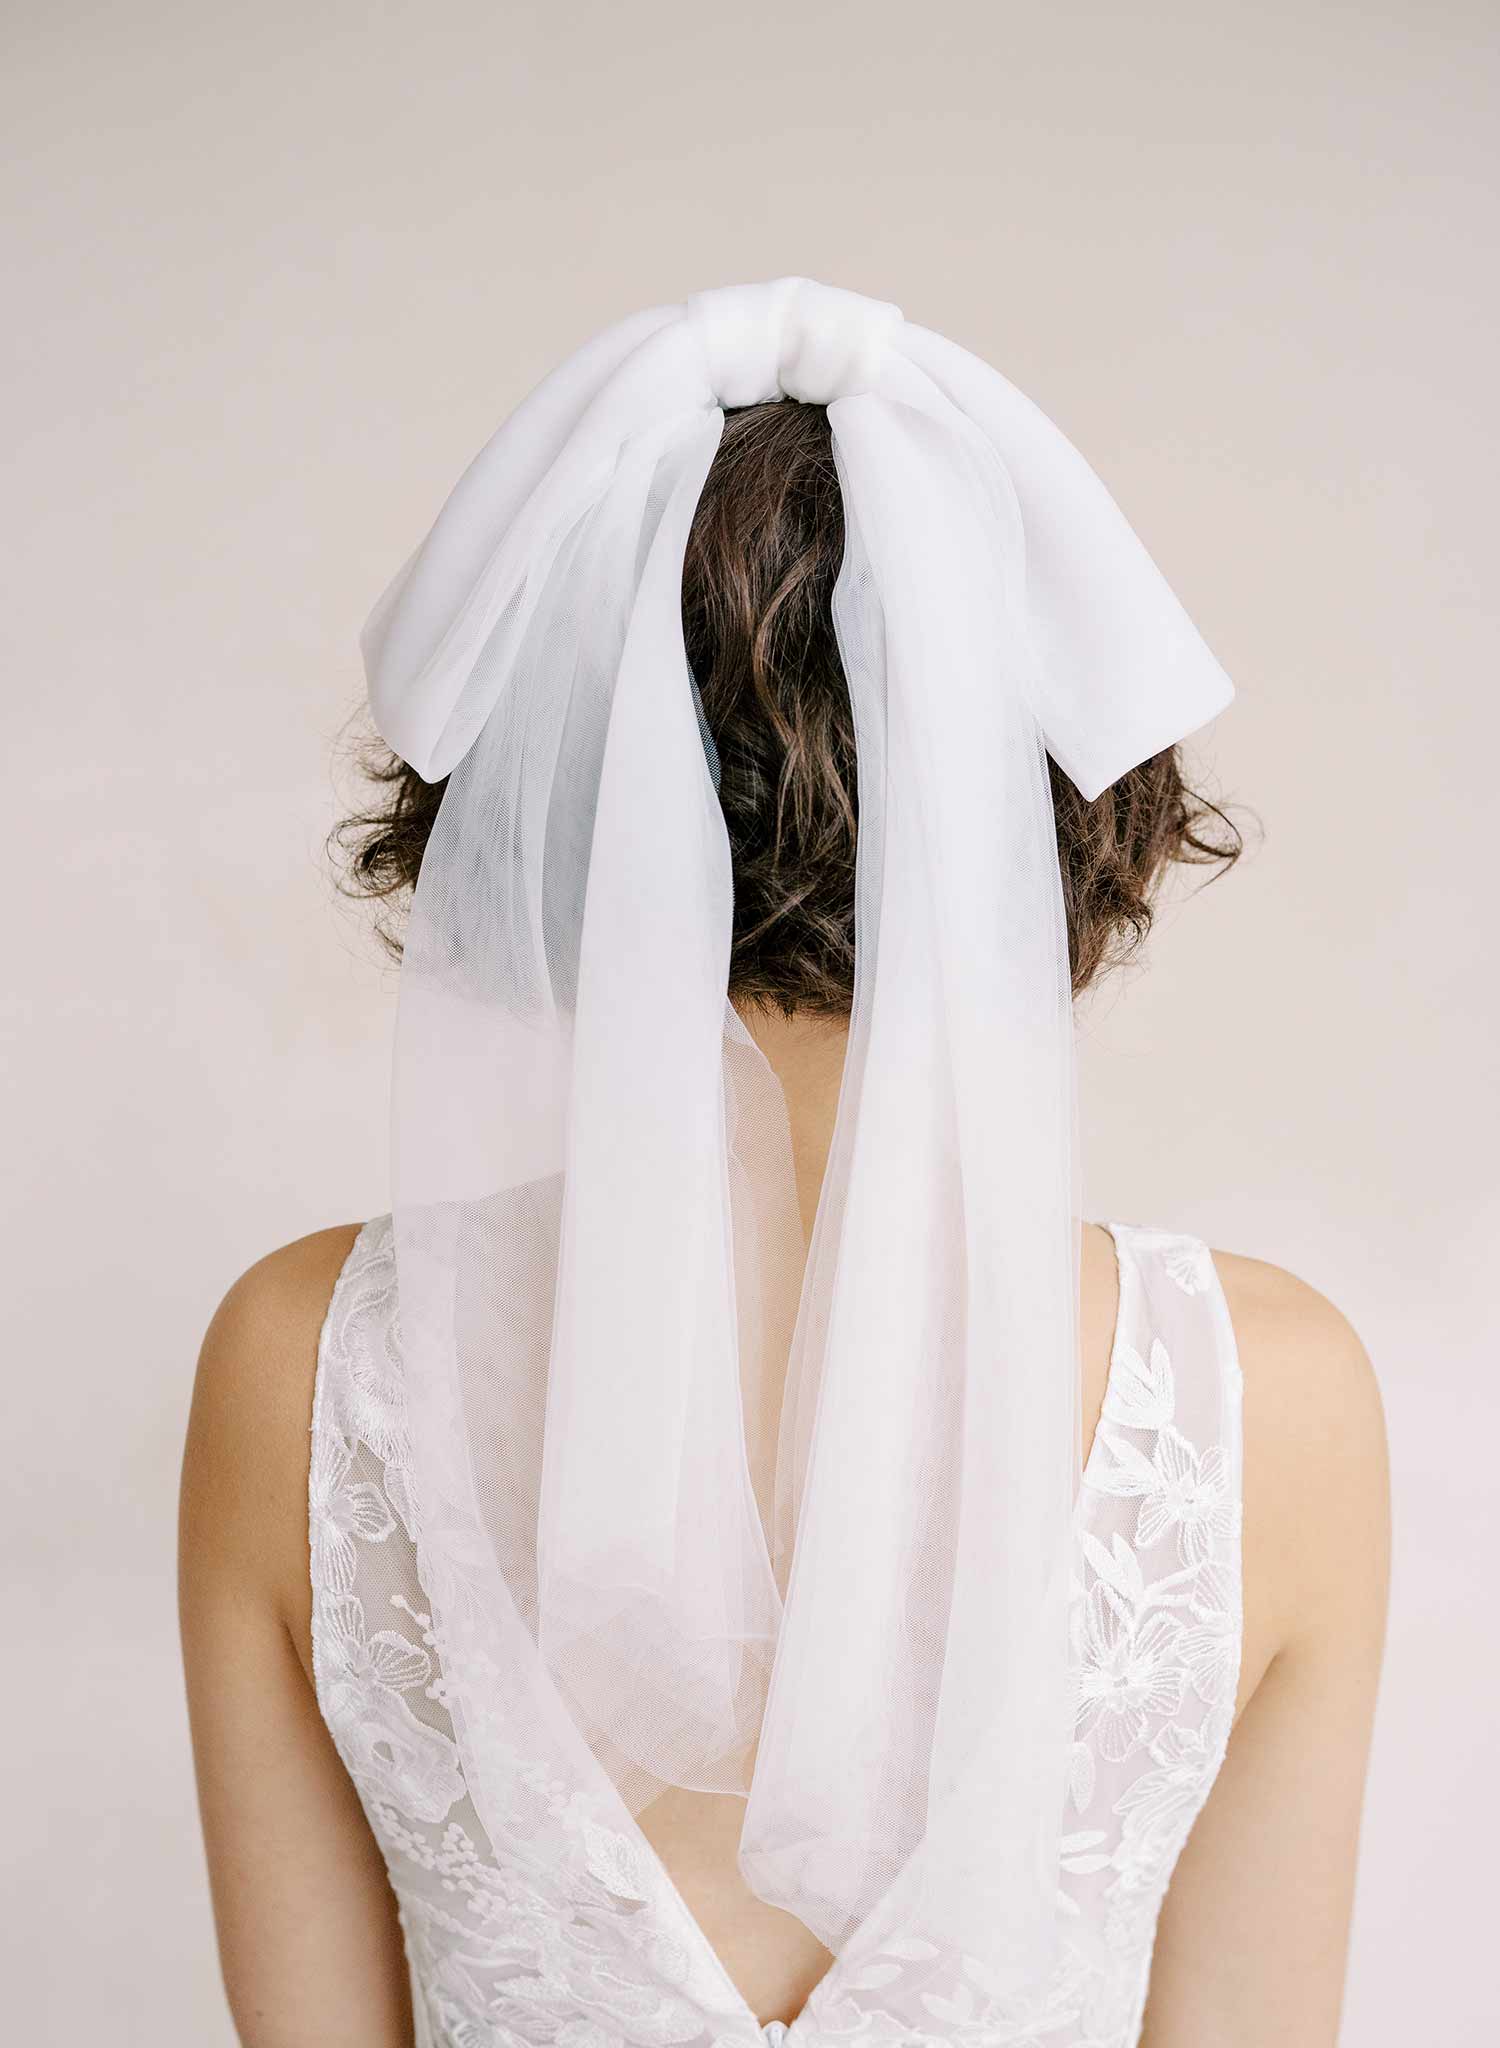 Veil or No Veil? (Including Wedding Veil Alternatives)